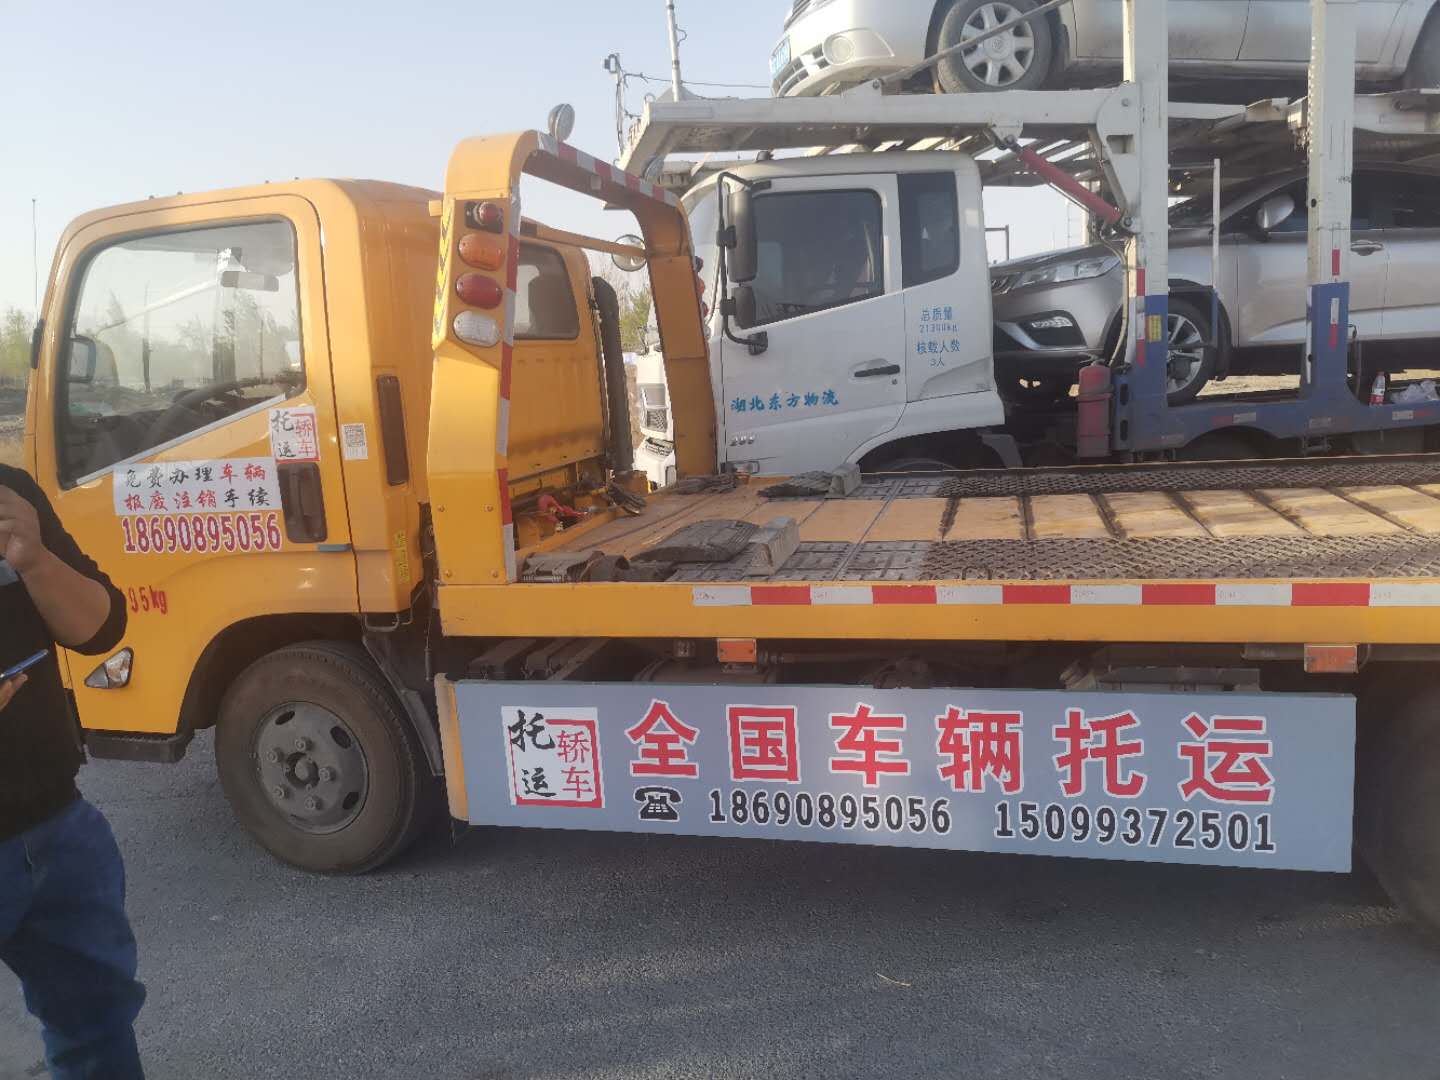 新疆全境运个小车到广州全境无障碍派送